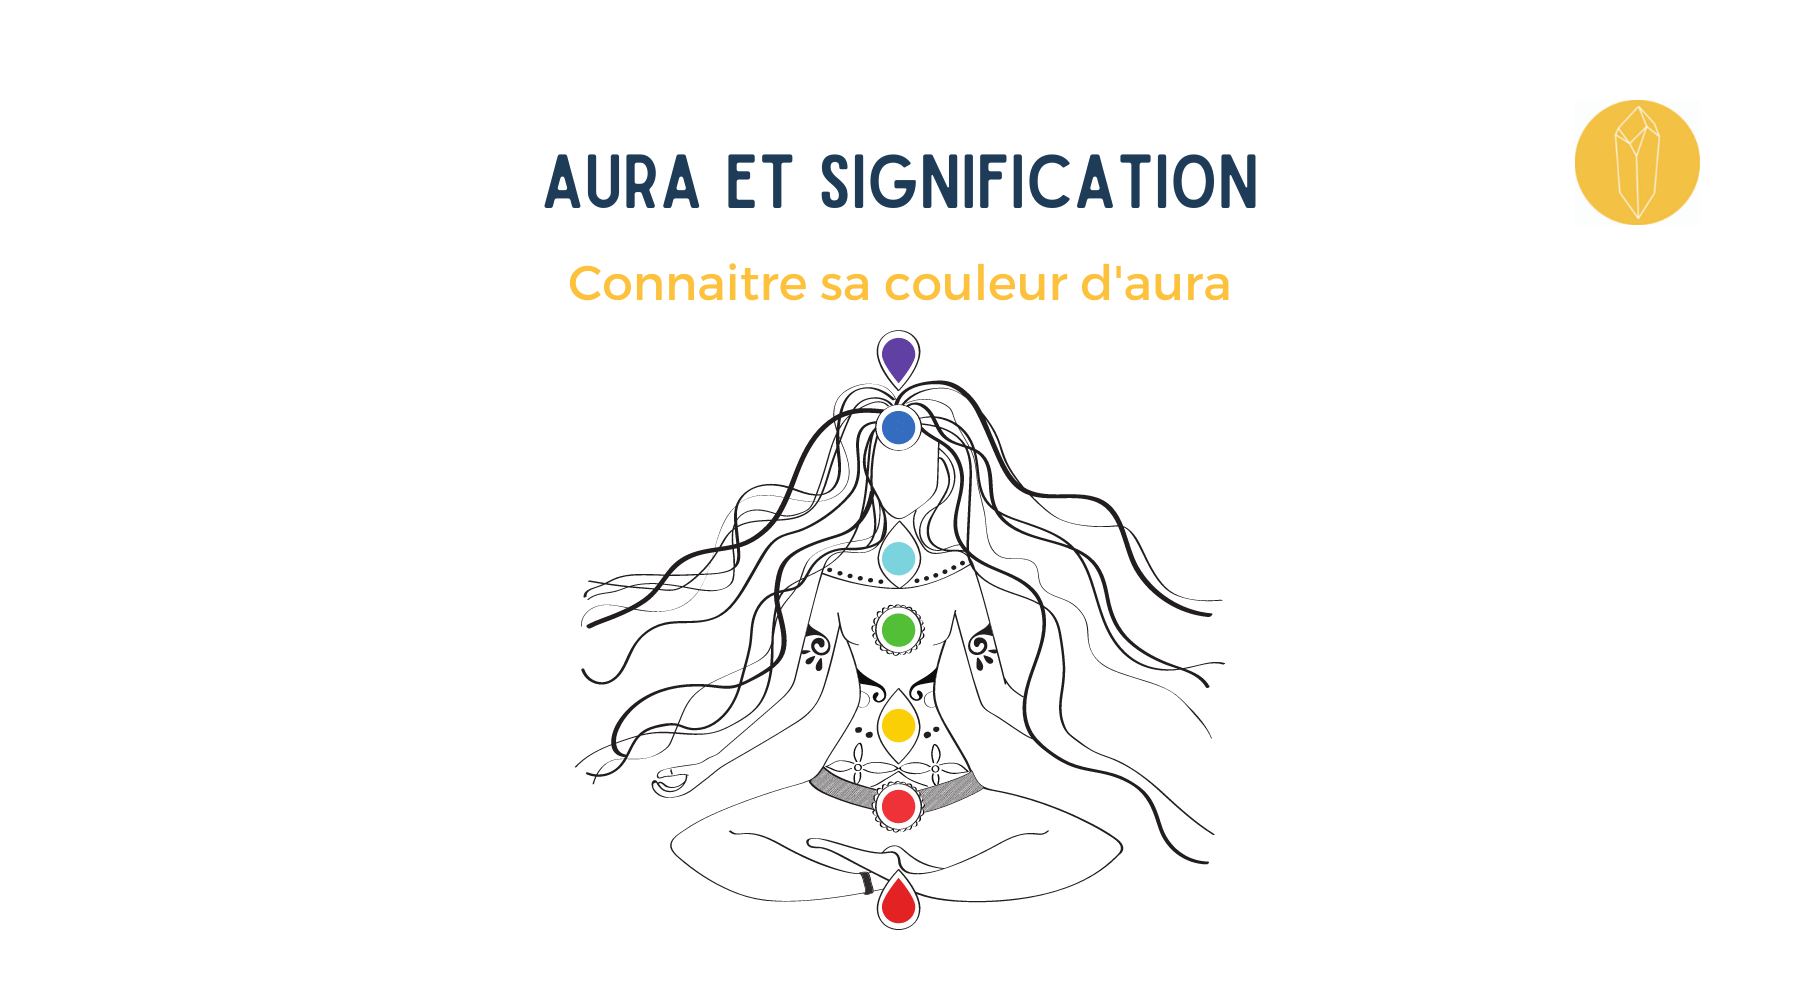 Aura et signification comment connaitre la couleur de son aura ?